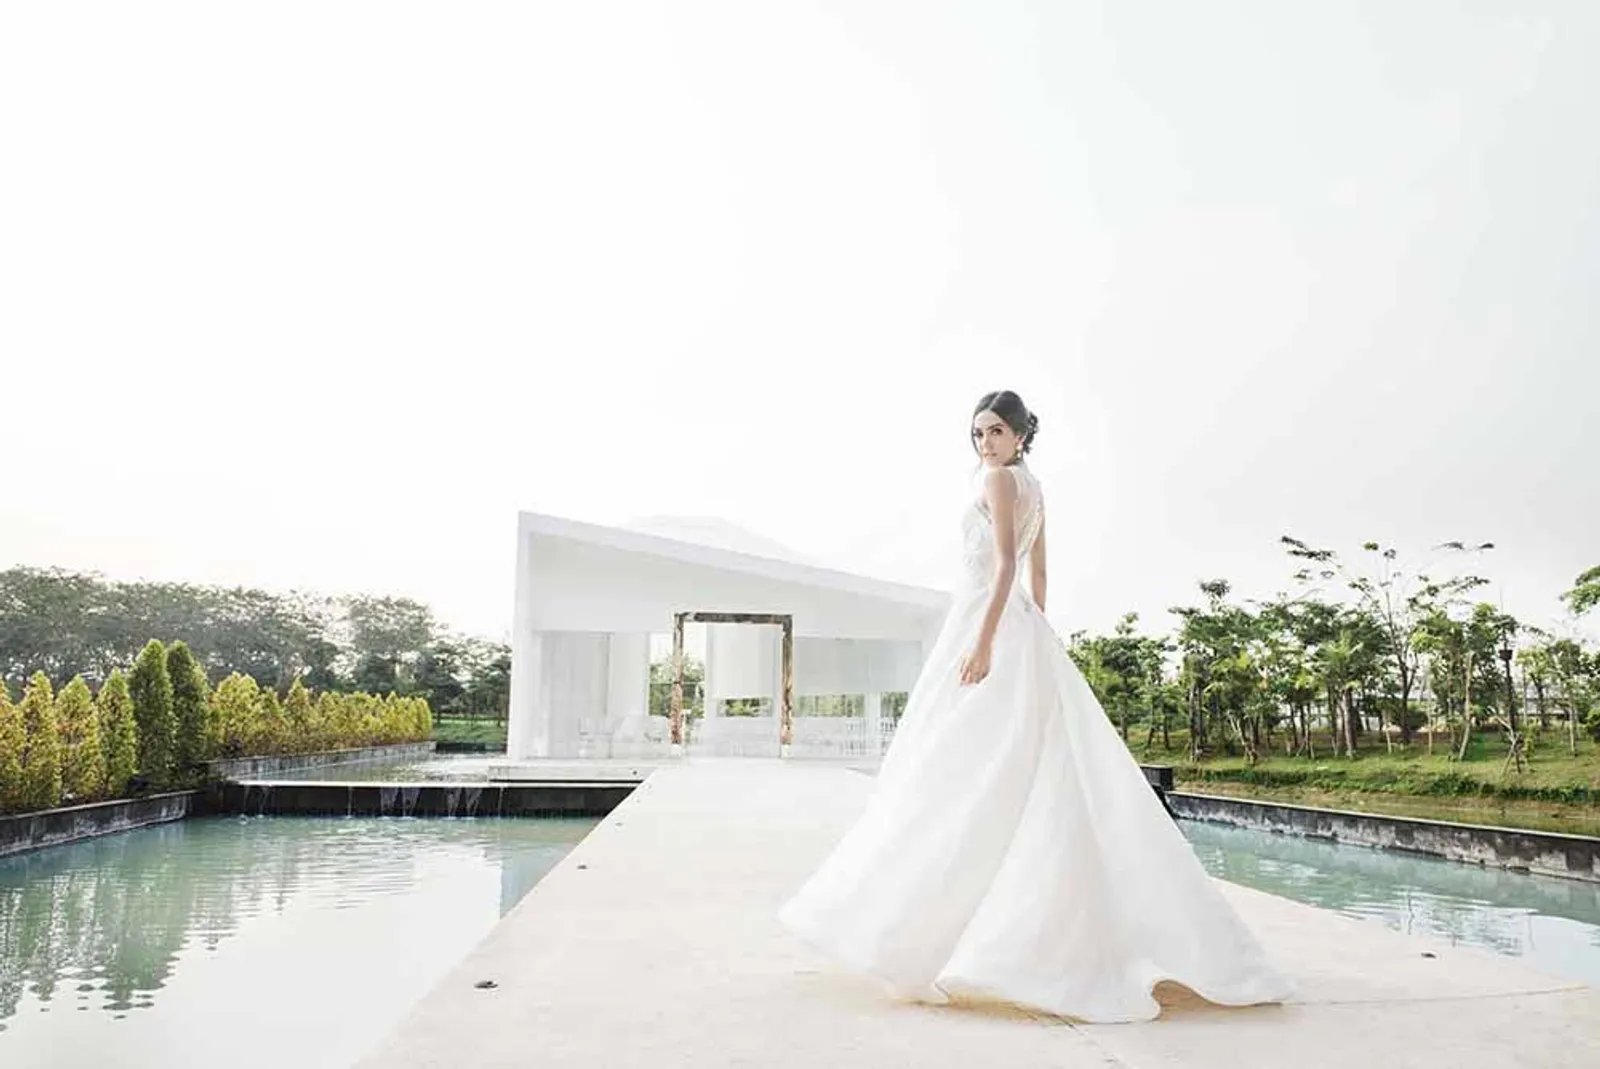 6 Harga Sewa Gedung Pernikahan di Tangerang Tahun 2019